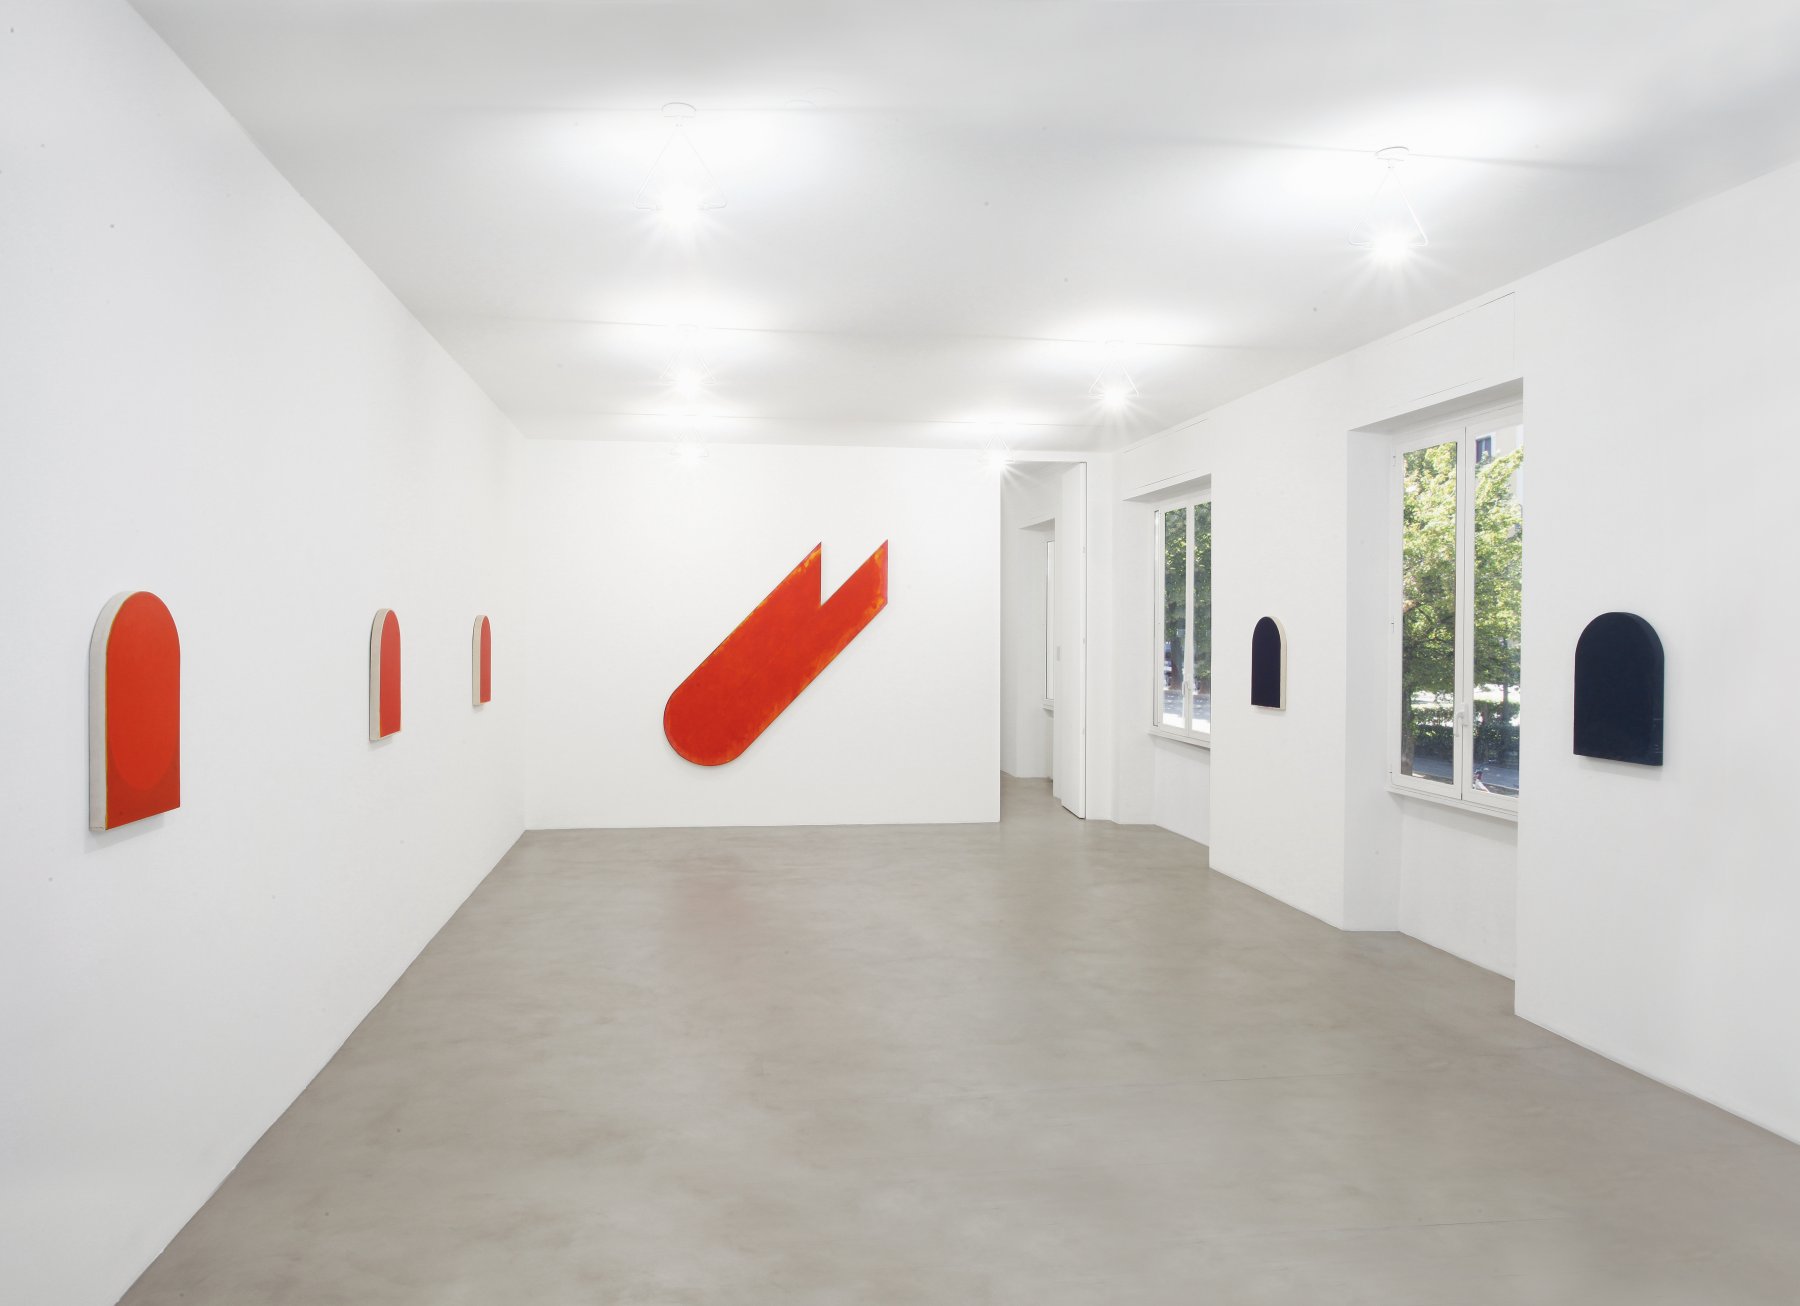 Installation image for Rodolfo Aricò: The Dissonant Image, at A arte Invernizzi